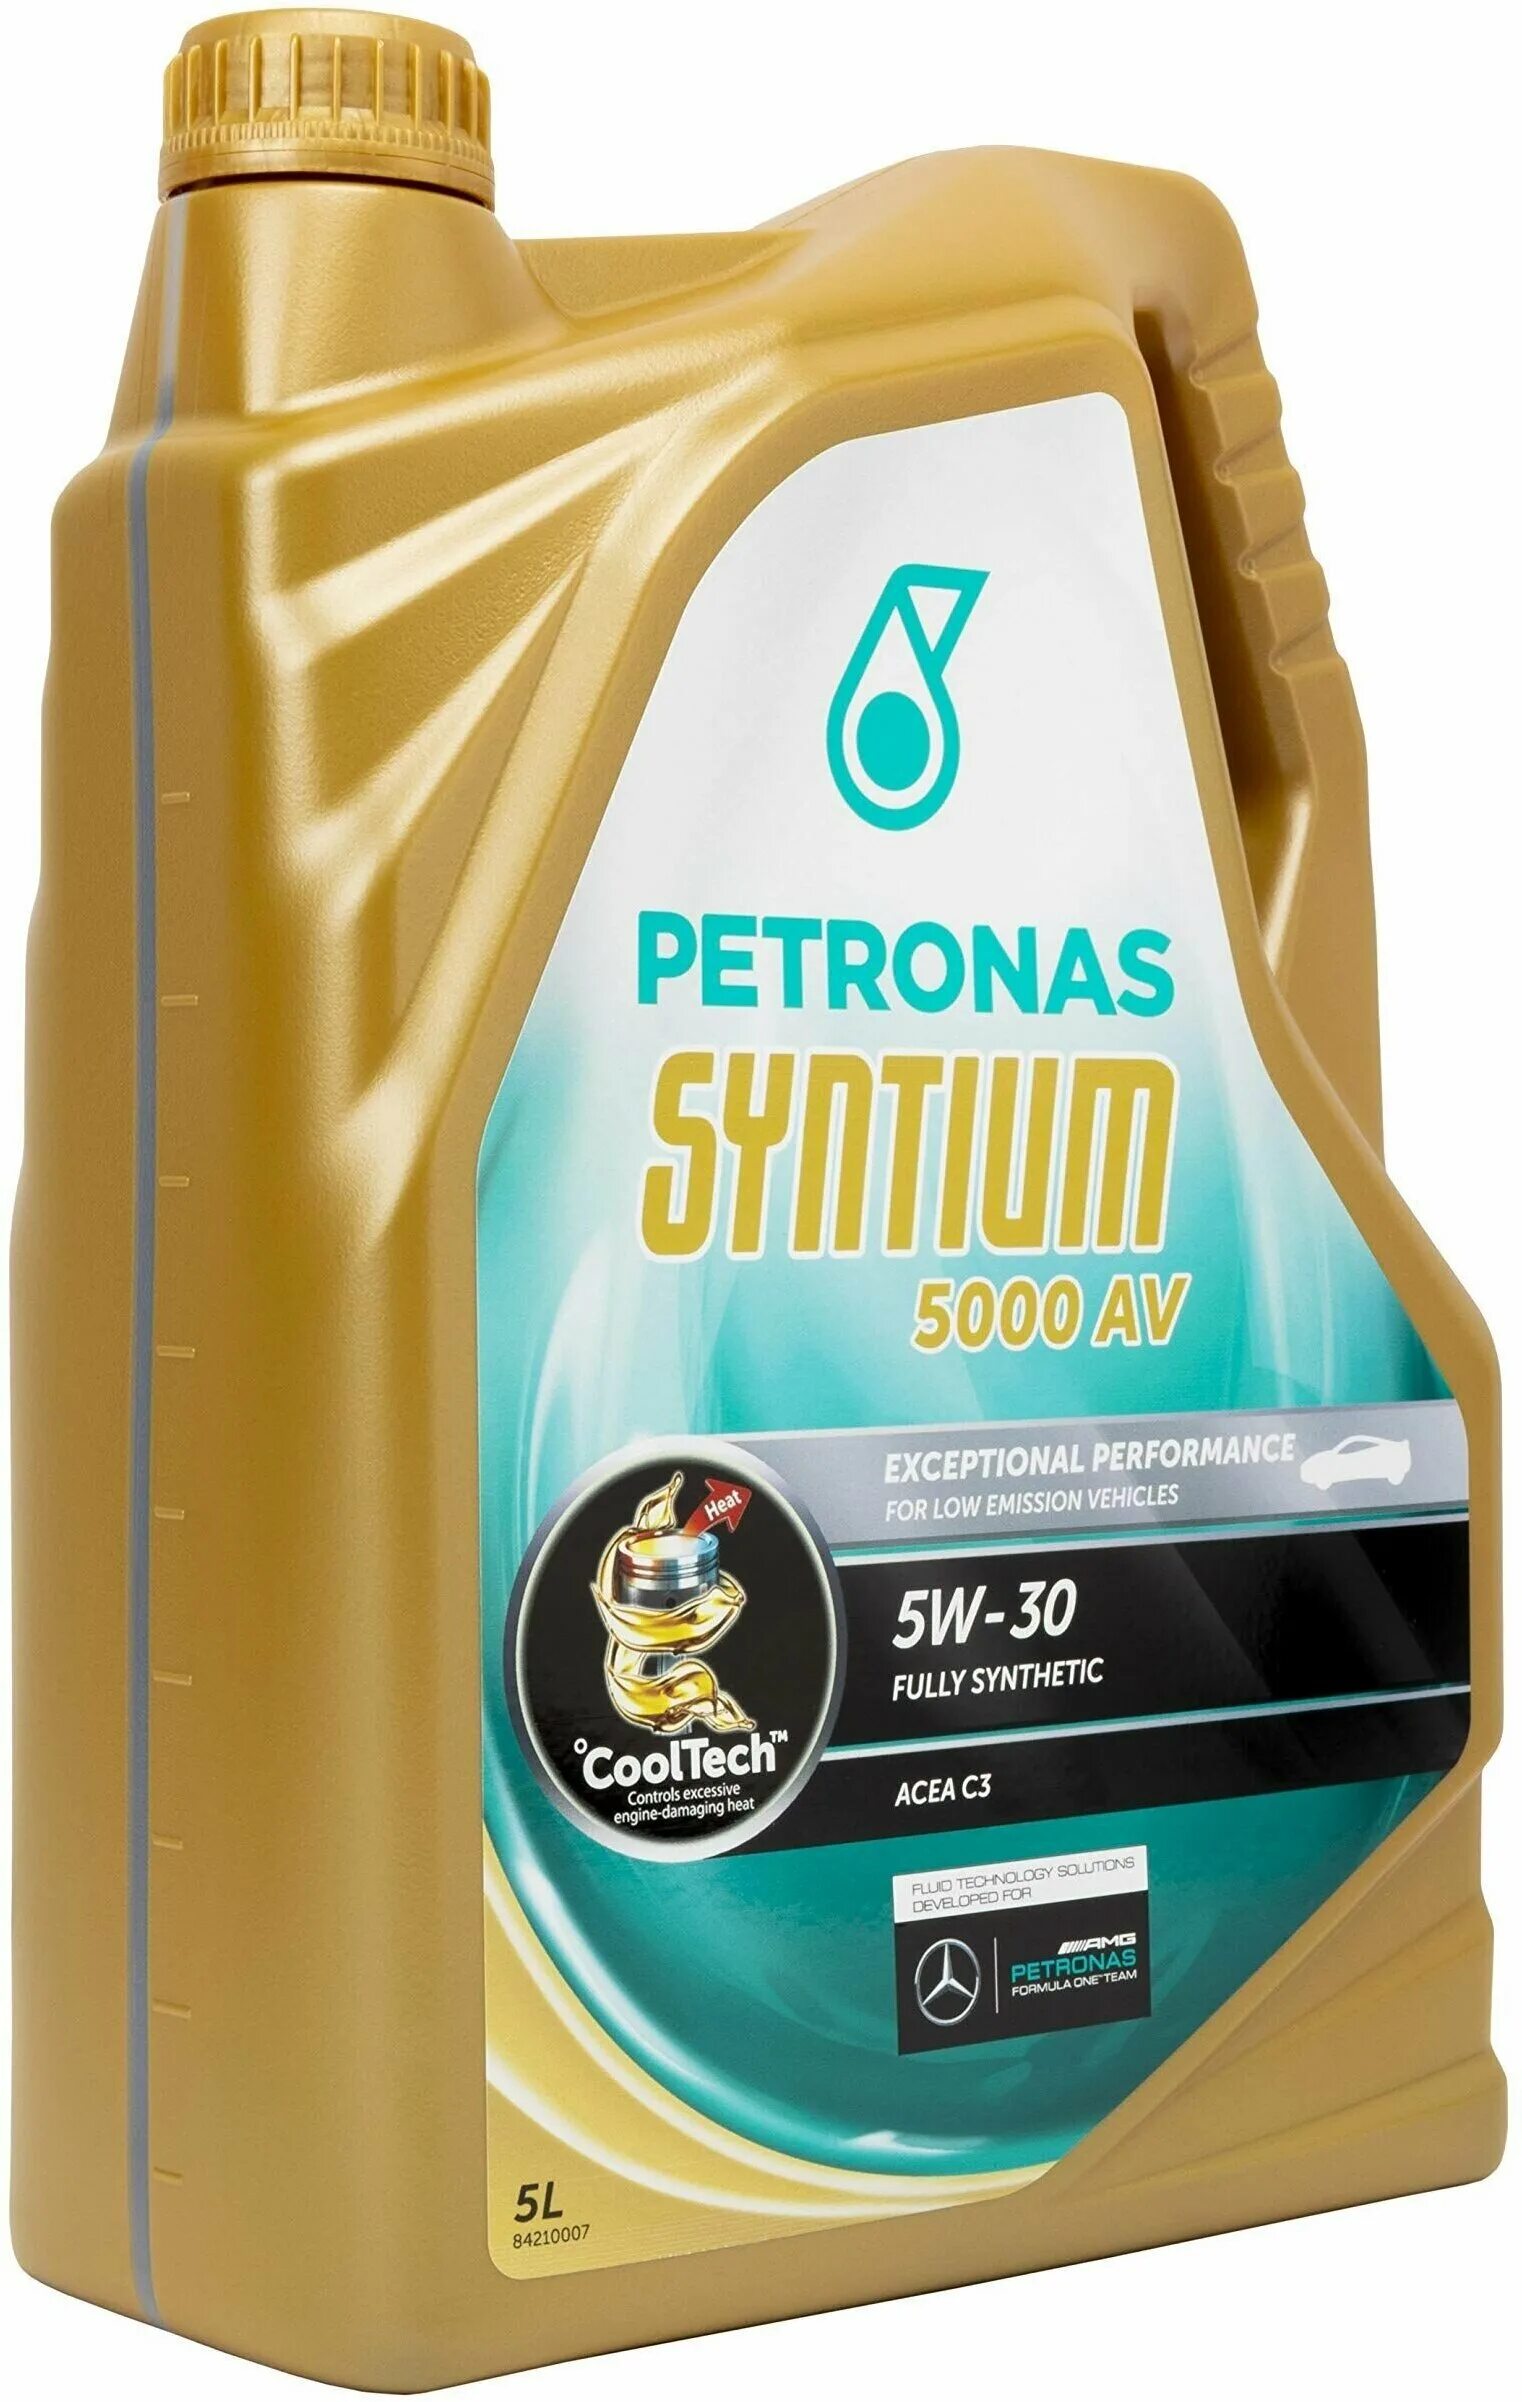 Petronas Syntium 3000 av 5w40. Petronas Syntium 3000 5w-40. Syntium 5000 av 5w30. Petronas Syntium 5/40. Petronas 5000 av